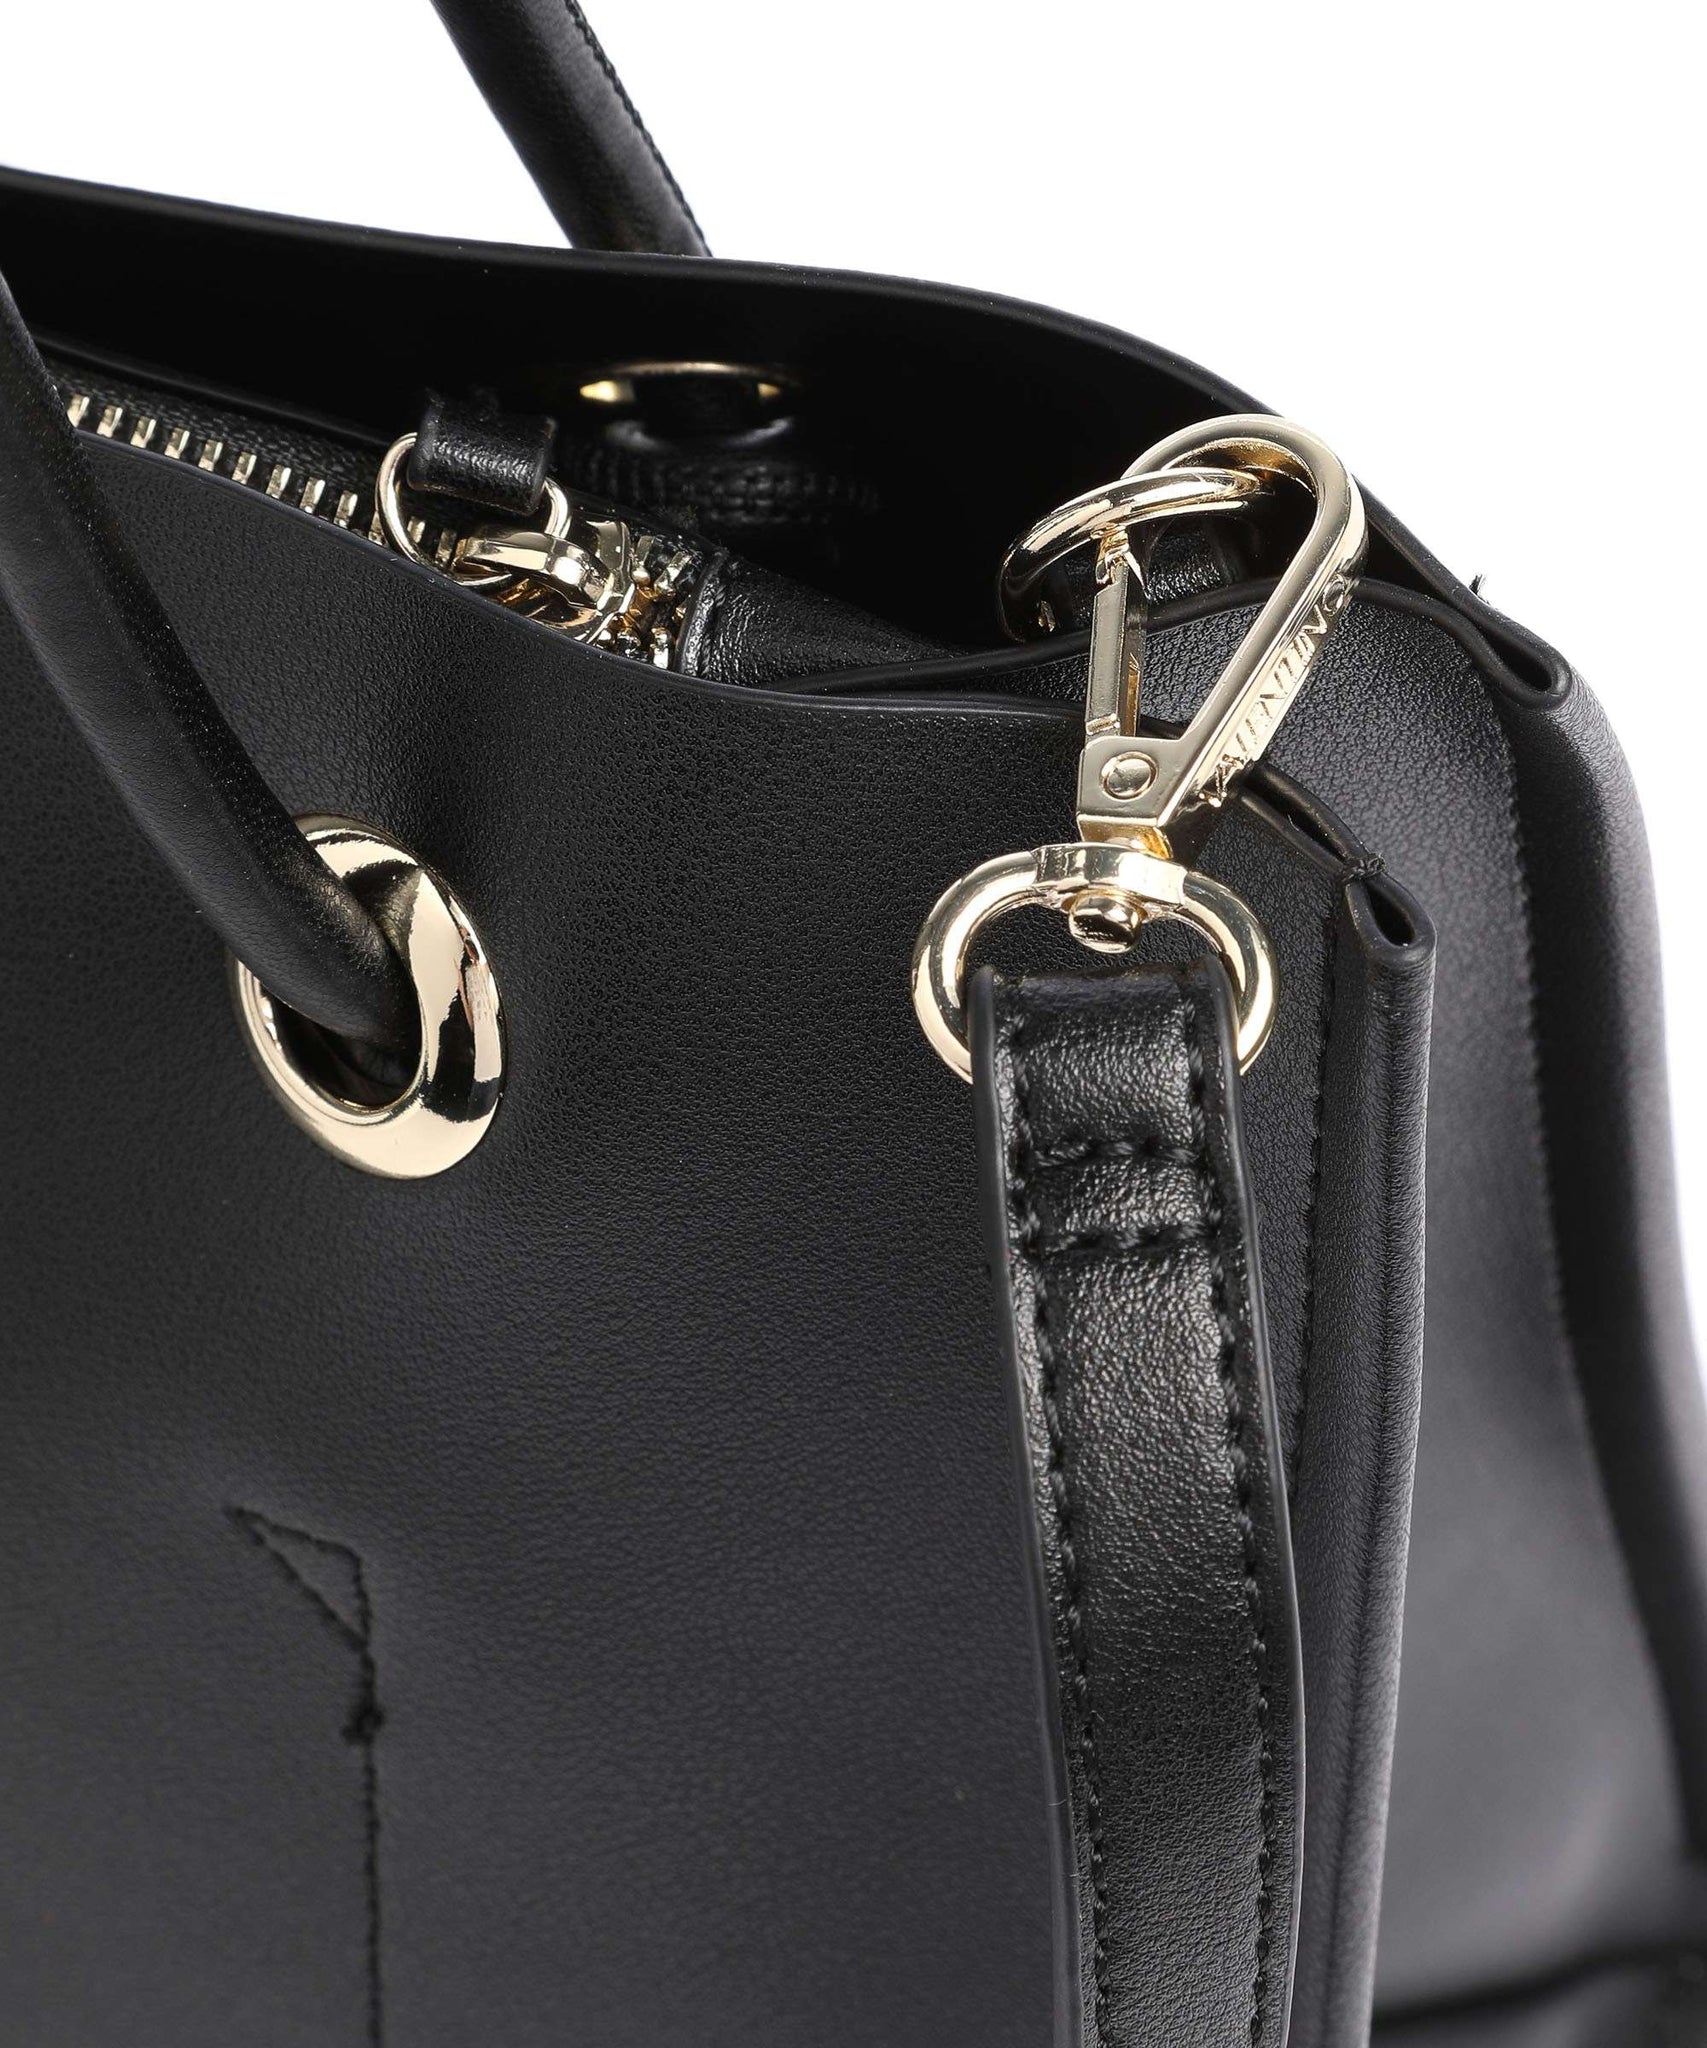 Valentino Bags Plum Shopper Tote Black | Bags Shoulder bags | Valentino Bags | Fashion2B